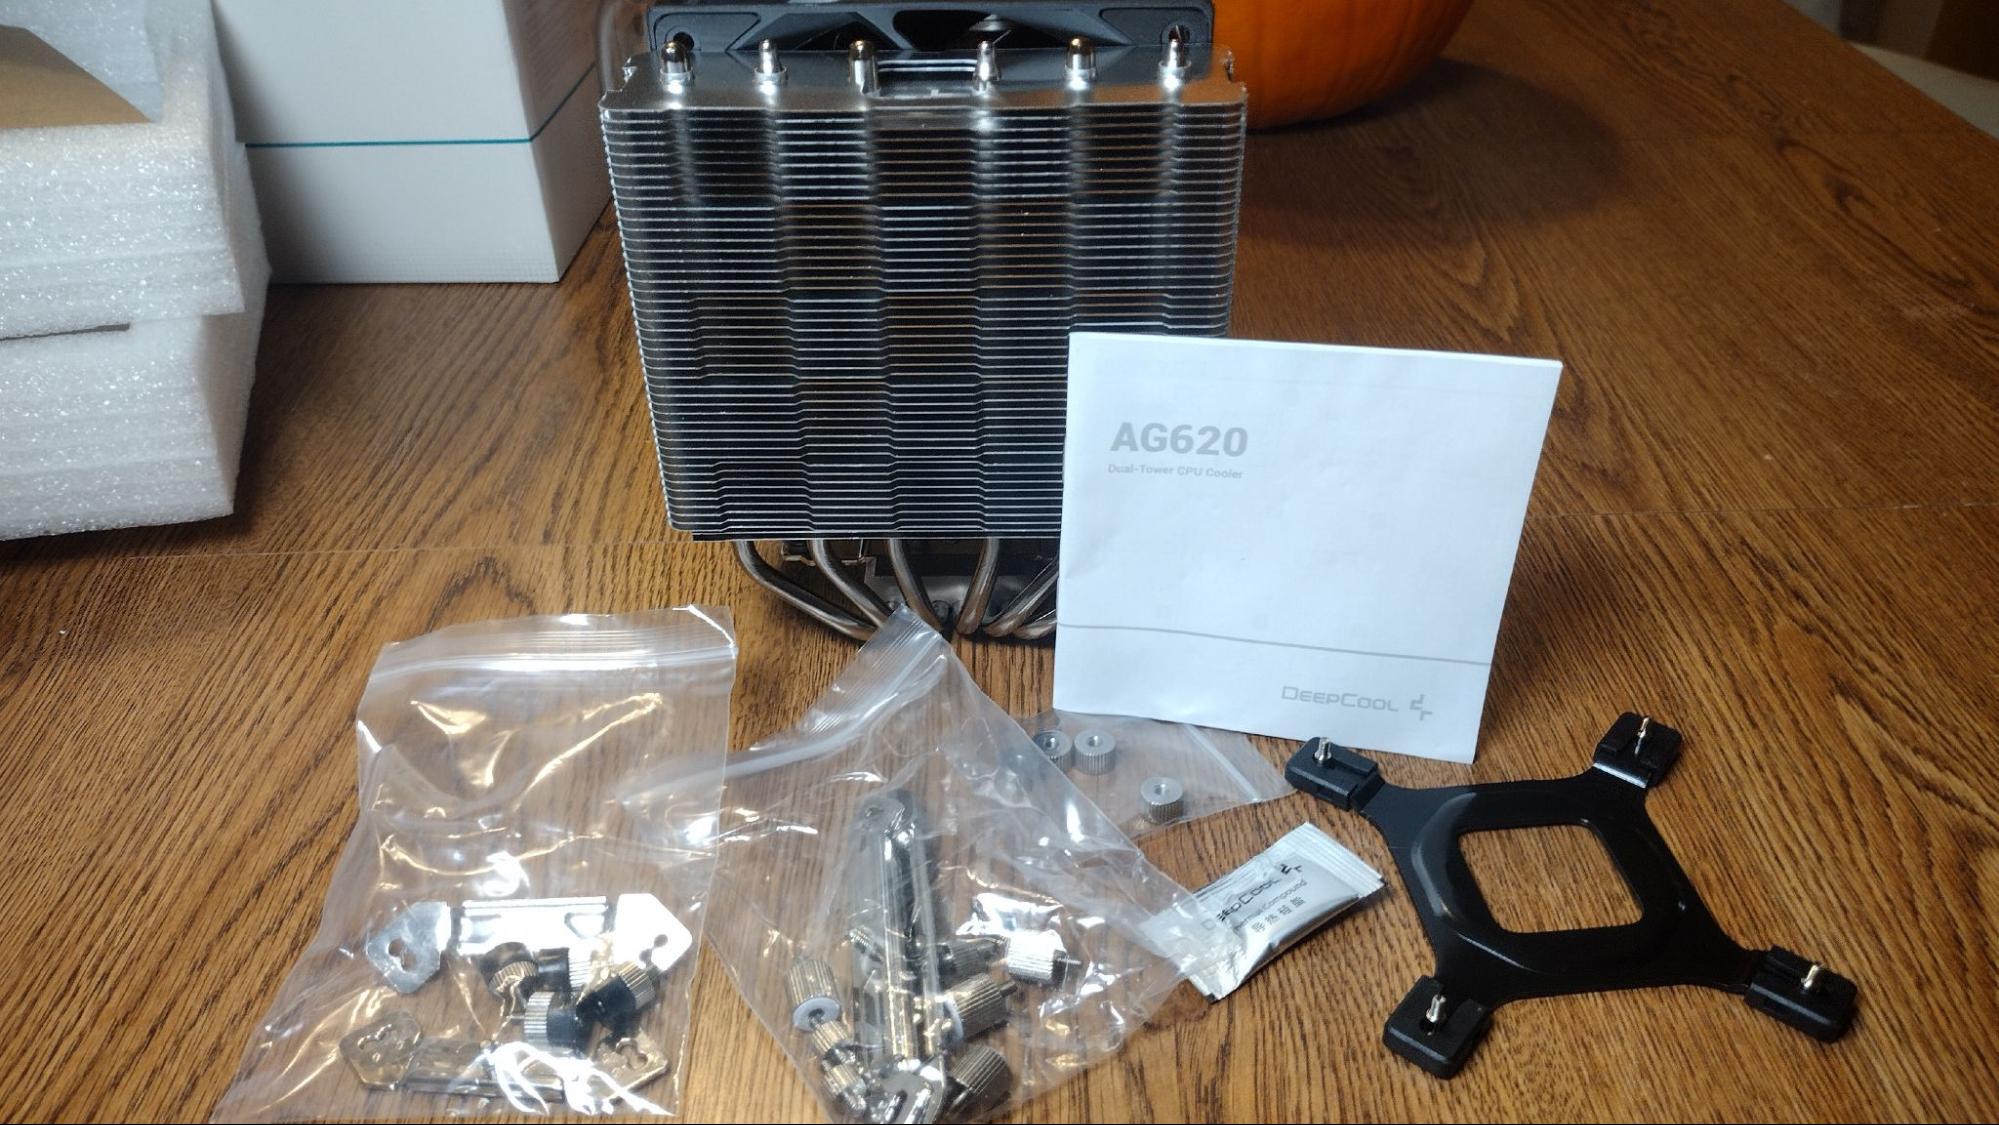 DeepCool AG620 Air Cooler